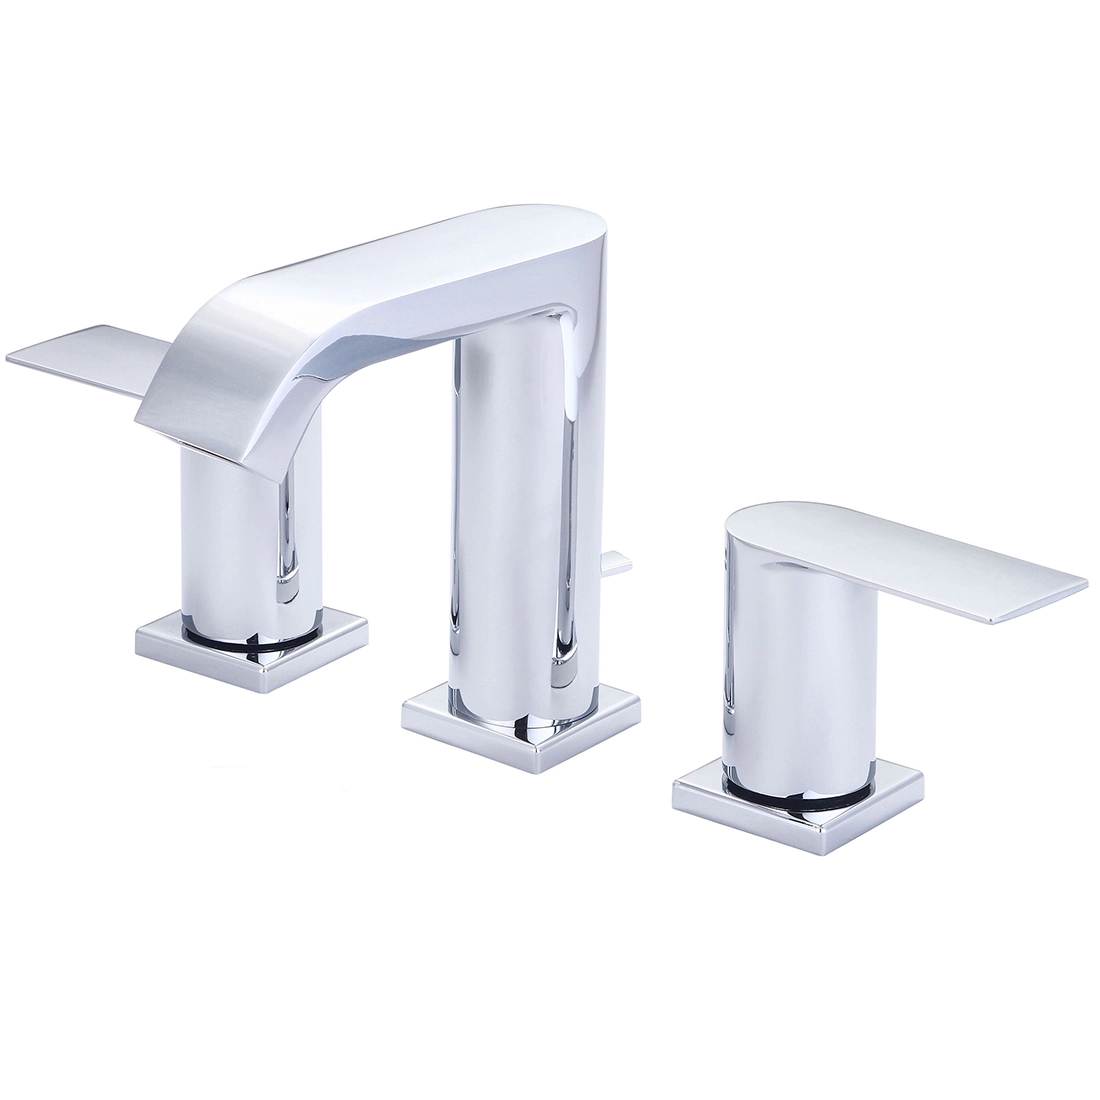 i4 Two Handle Bathroom Widespread Faucet Model# L-7492